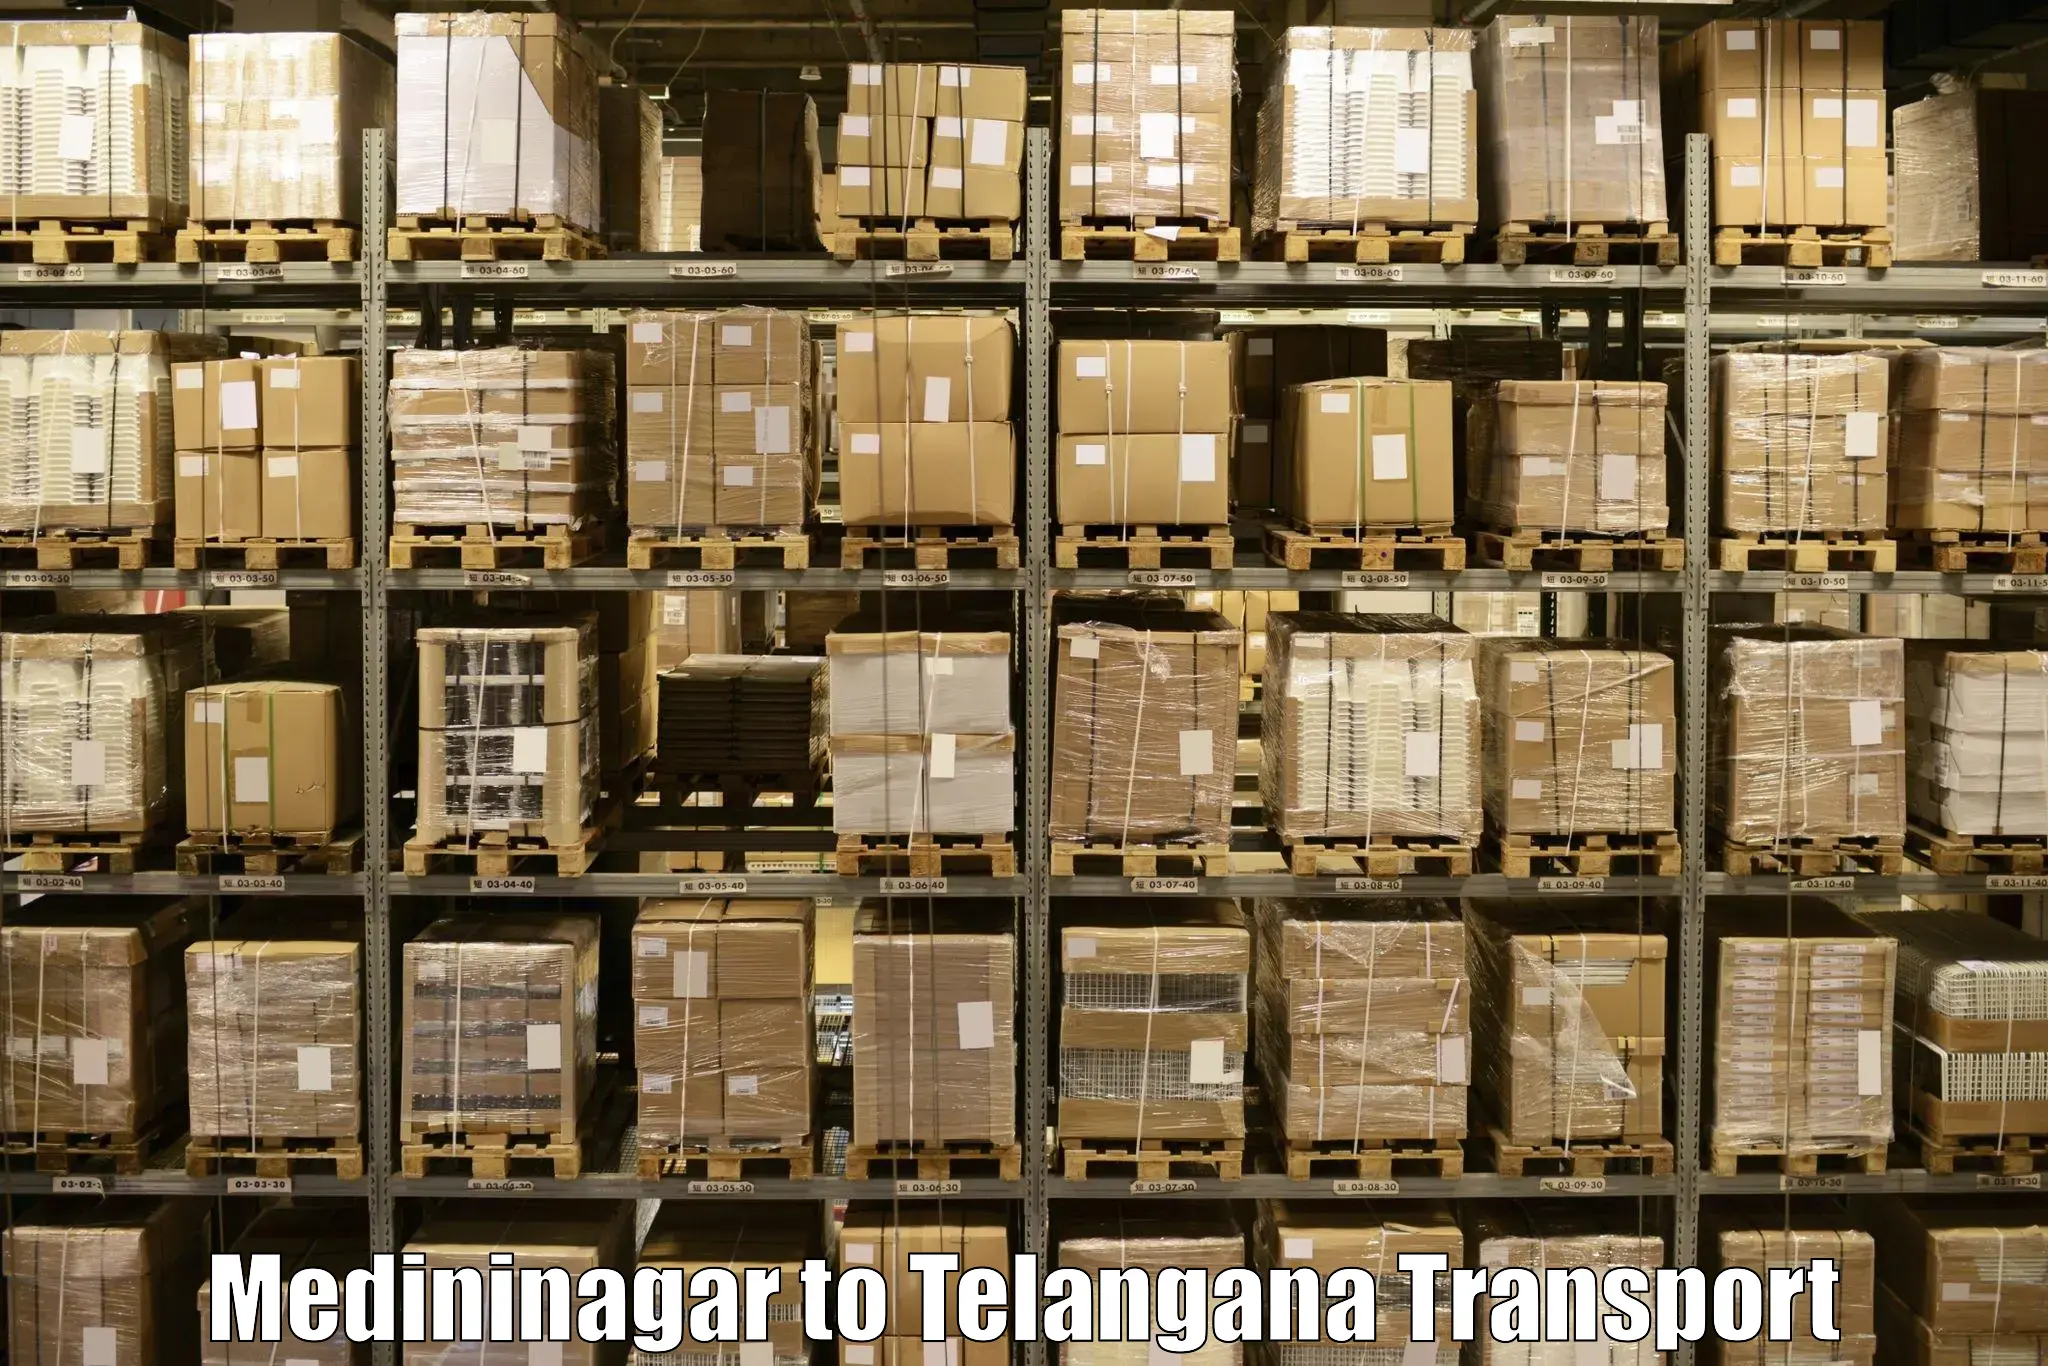 Transport services in Medininagar to Shadnagar